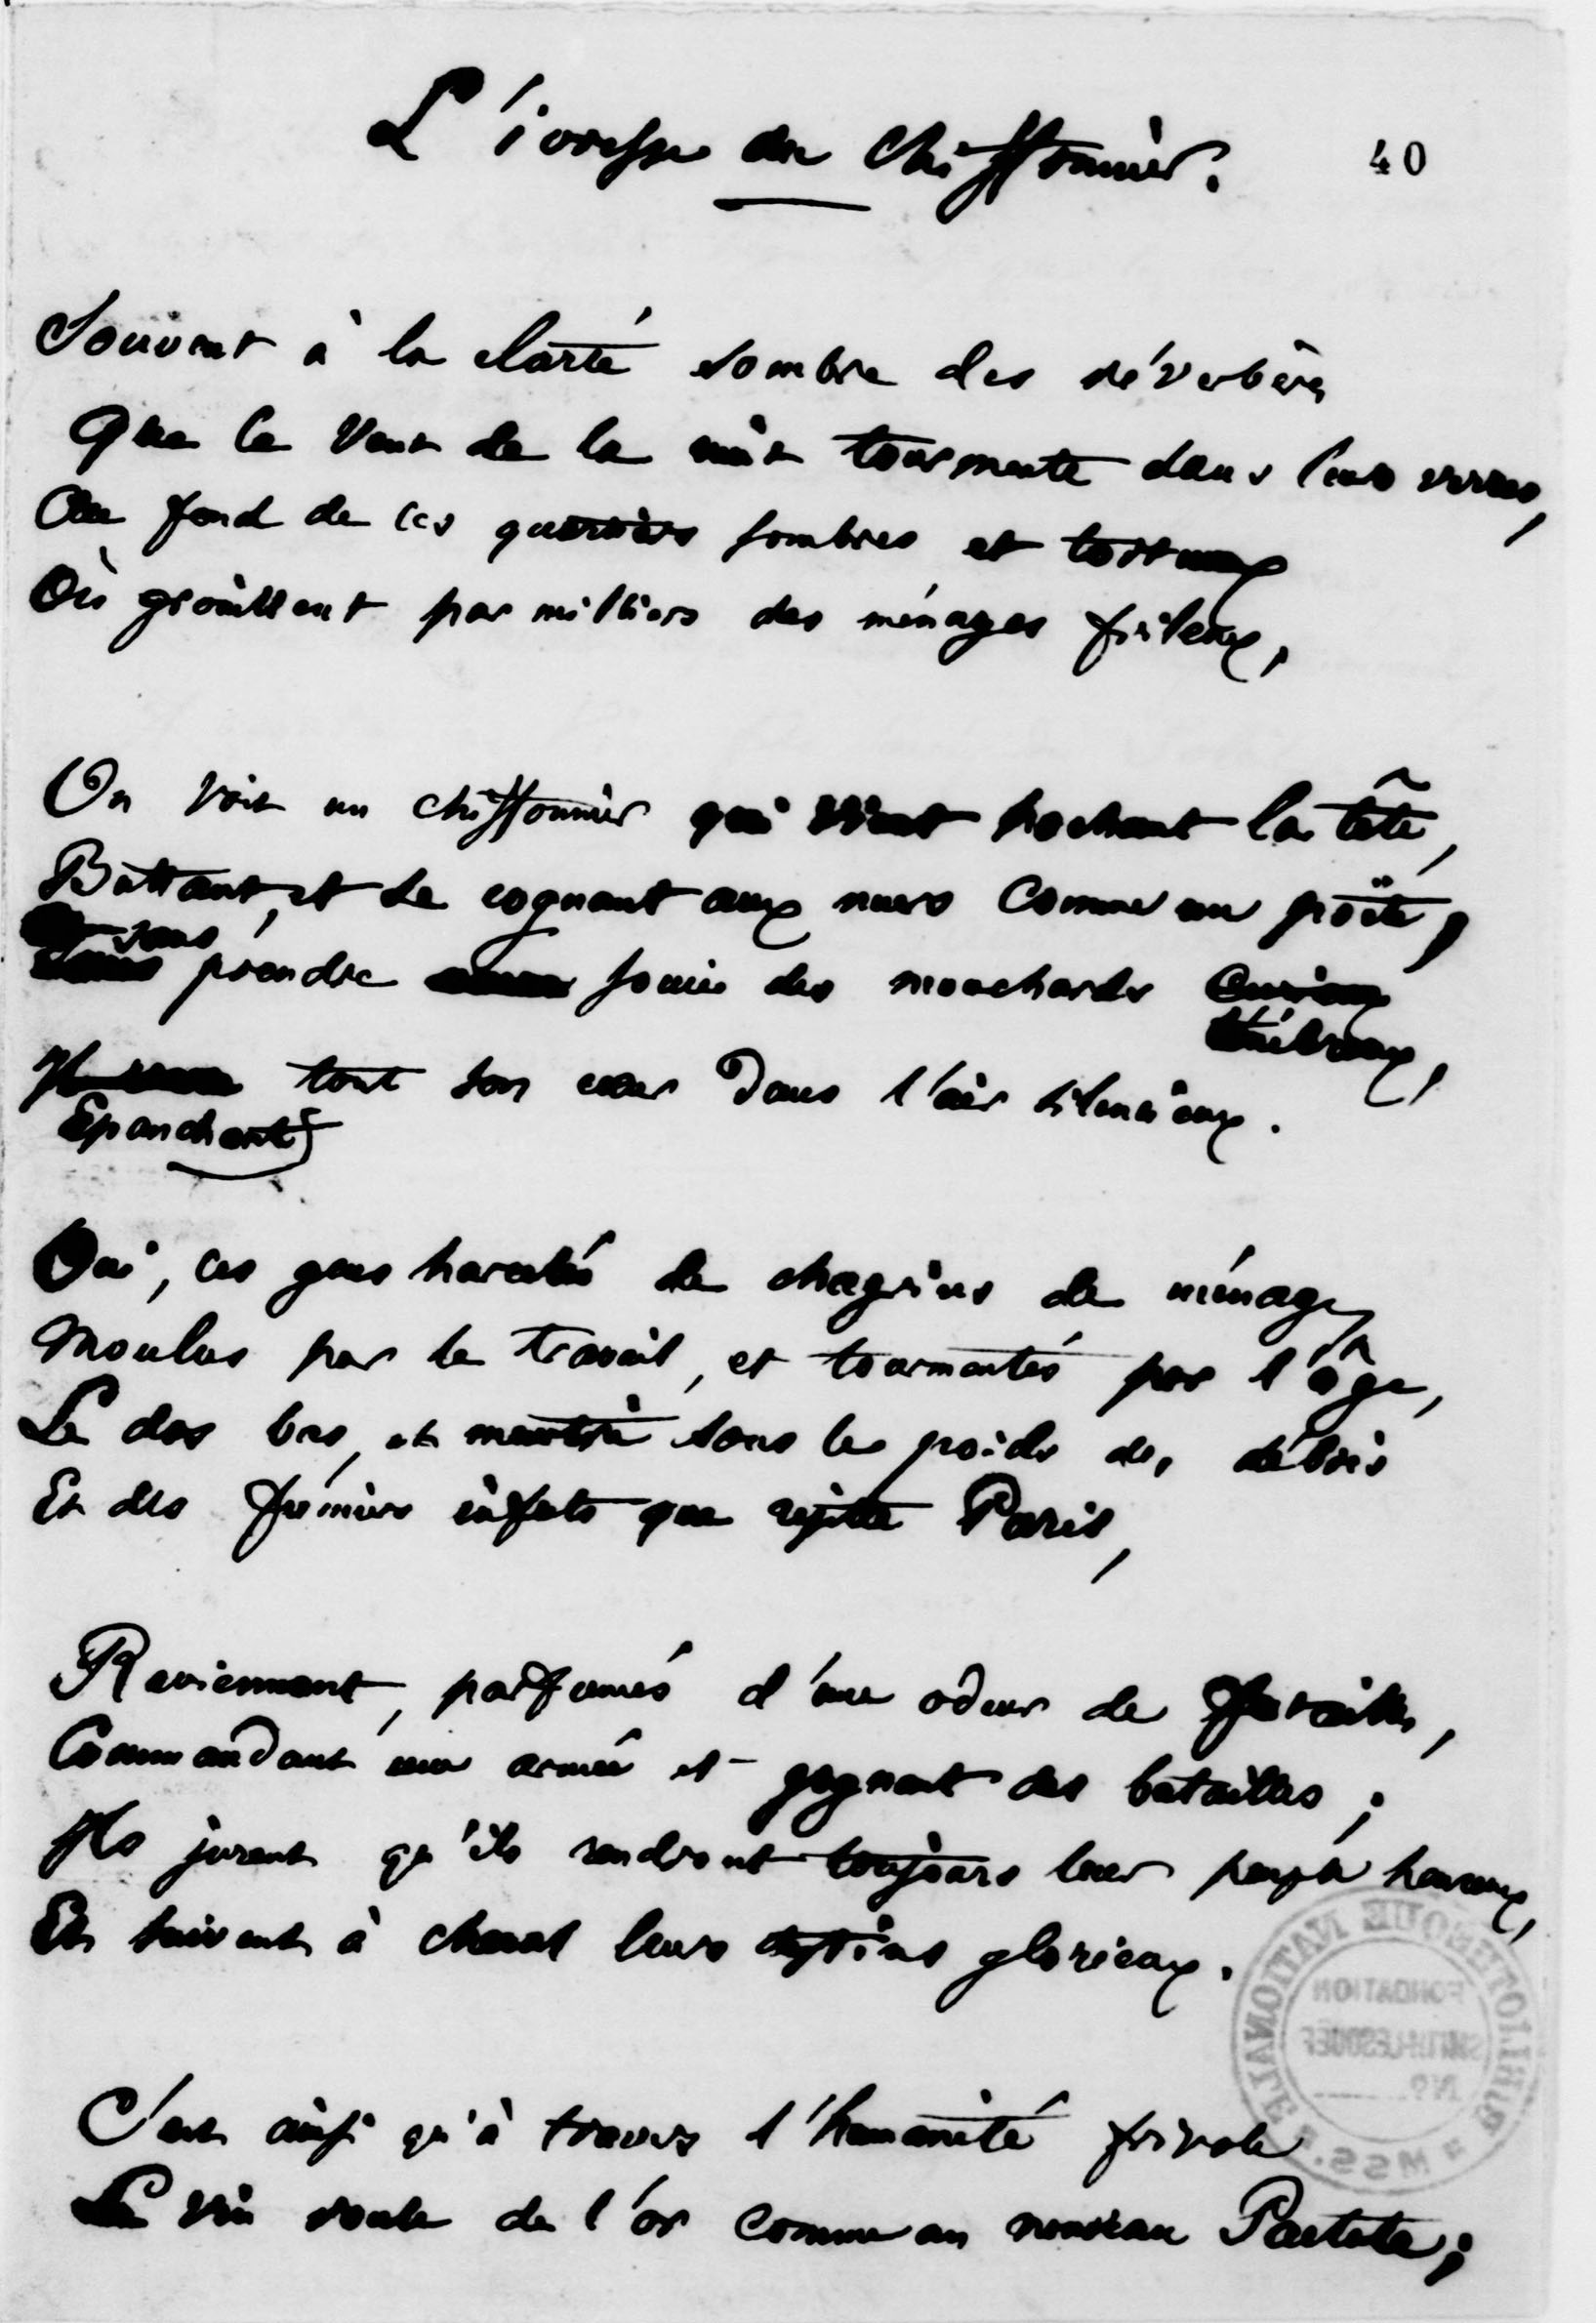 Charles Baudelaire, "L’Ivresse du chiffonnier" copie autographe signée,1852 BnF, dpt. des Manuscrits © BnF